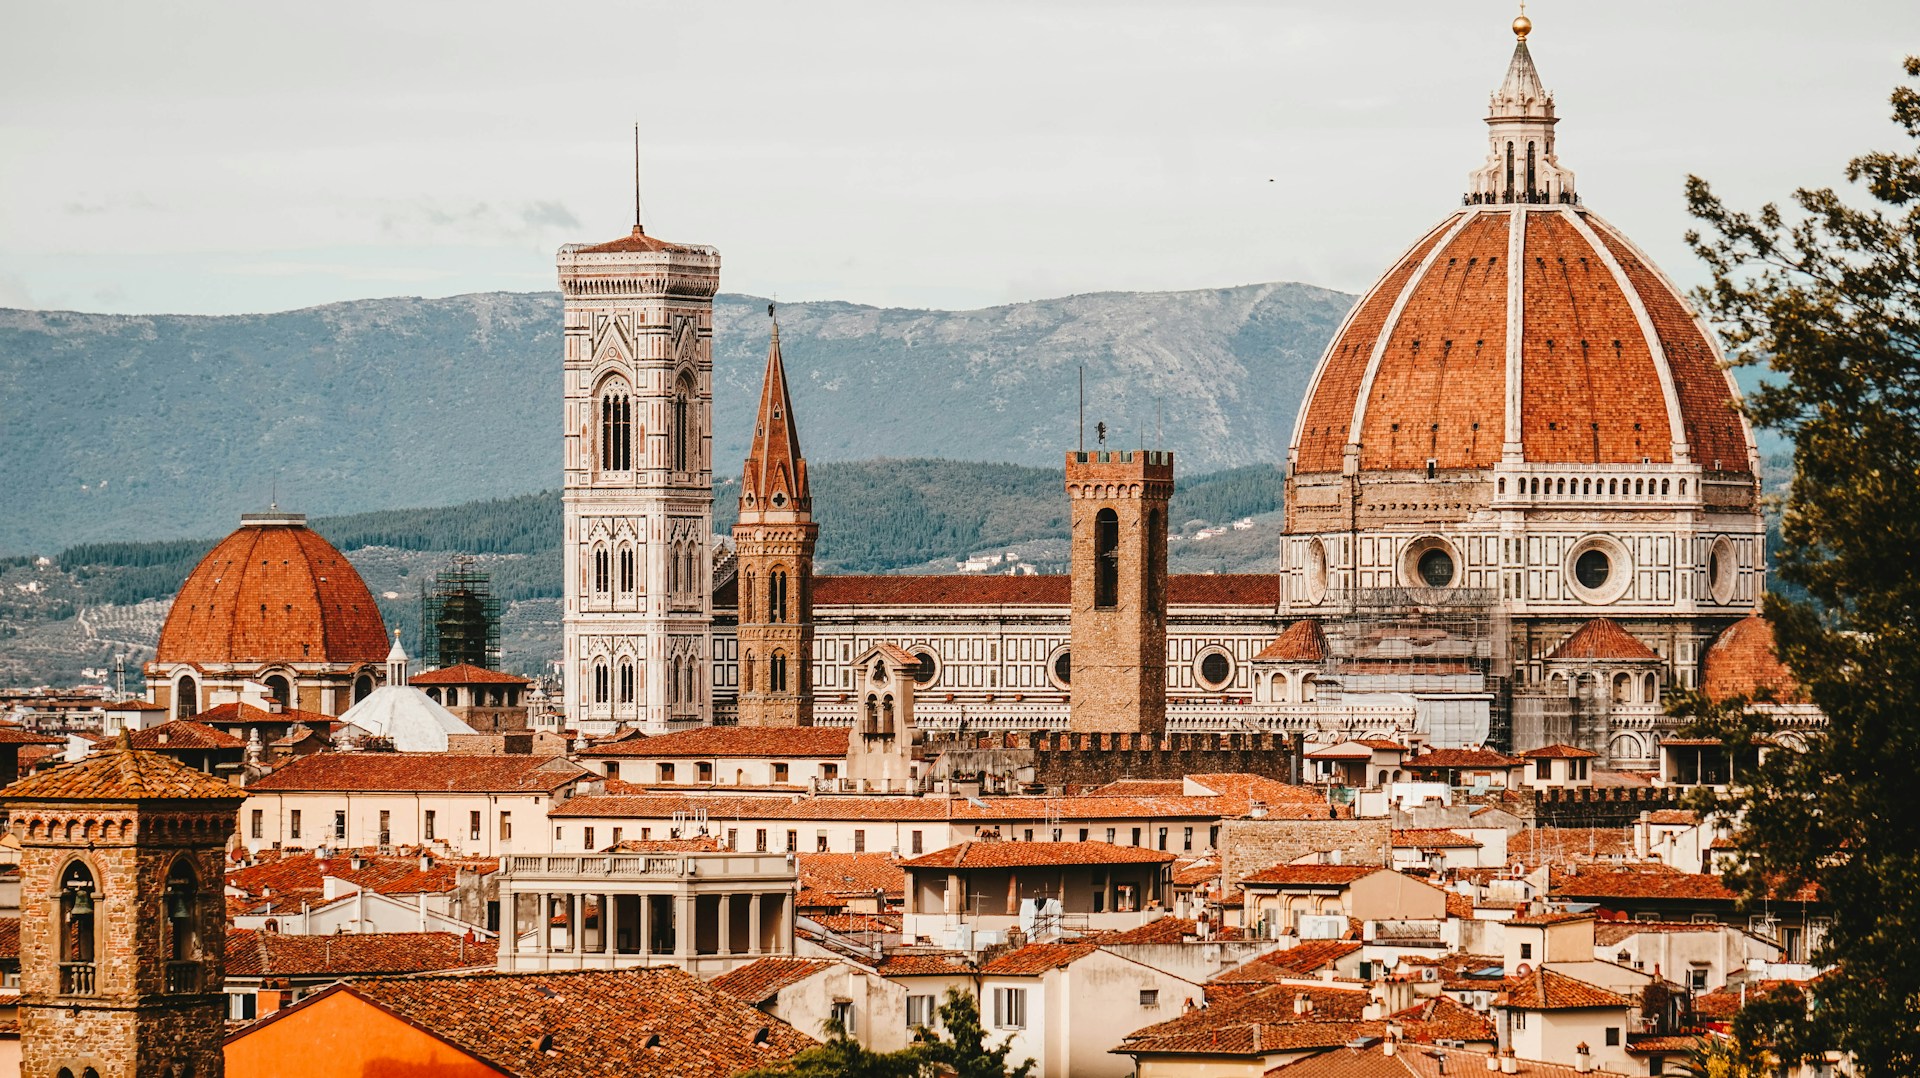 Plan zwiedzania Florencji - co zobaczyć i gdzie nocować